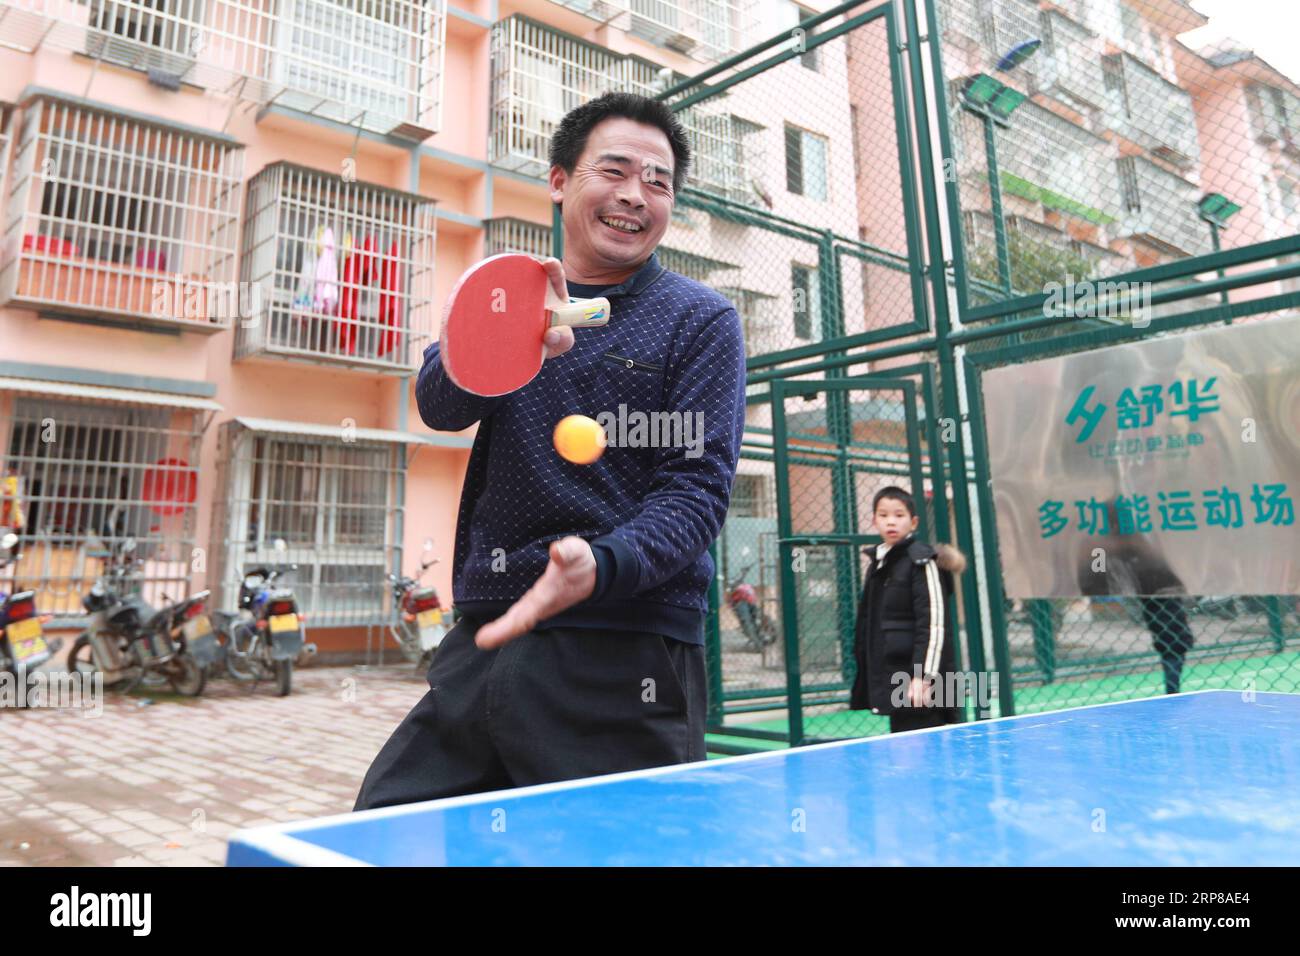 (190224) -- RONGJIANG, 24 février 2019 (Xinhua) -- un résident joue au tennis de table dans la communauté de relocalisation du comté de Rongjiang de Qiandongnan Miao et de la préfecture autonome de Dong, dans le sud-ouest de la Chine, province du Guizhou, 24 février 2019. Au total, 1,32 millions de personnes vivant dans des zones reculées et pauvres dans la province du Guizhou du sud-ouest de la Chine ont été relocalisées dans des communautés plus développées grâce au programme de relocalisation du gouvernement. Selon le plan provincial pour l'élimination de la pauvreté, un total de 1,88 millions de résidents pauvres à Guizhou seront transférés dans de nouveaux foyers par le sapin Banque D'Images